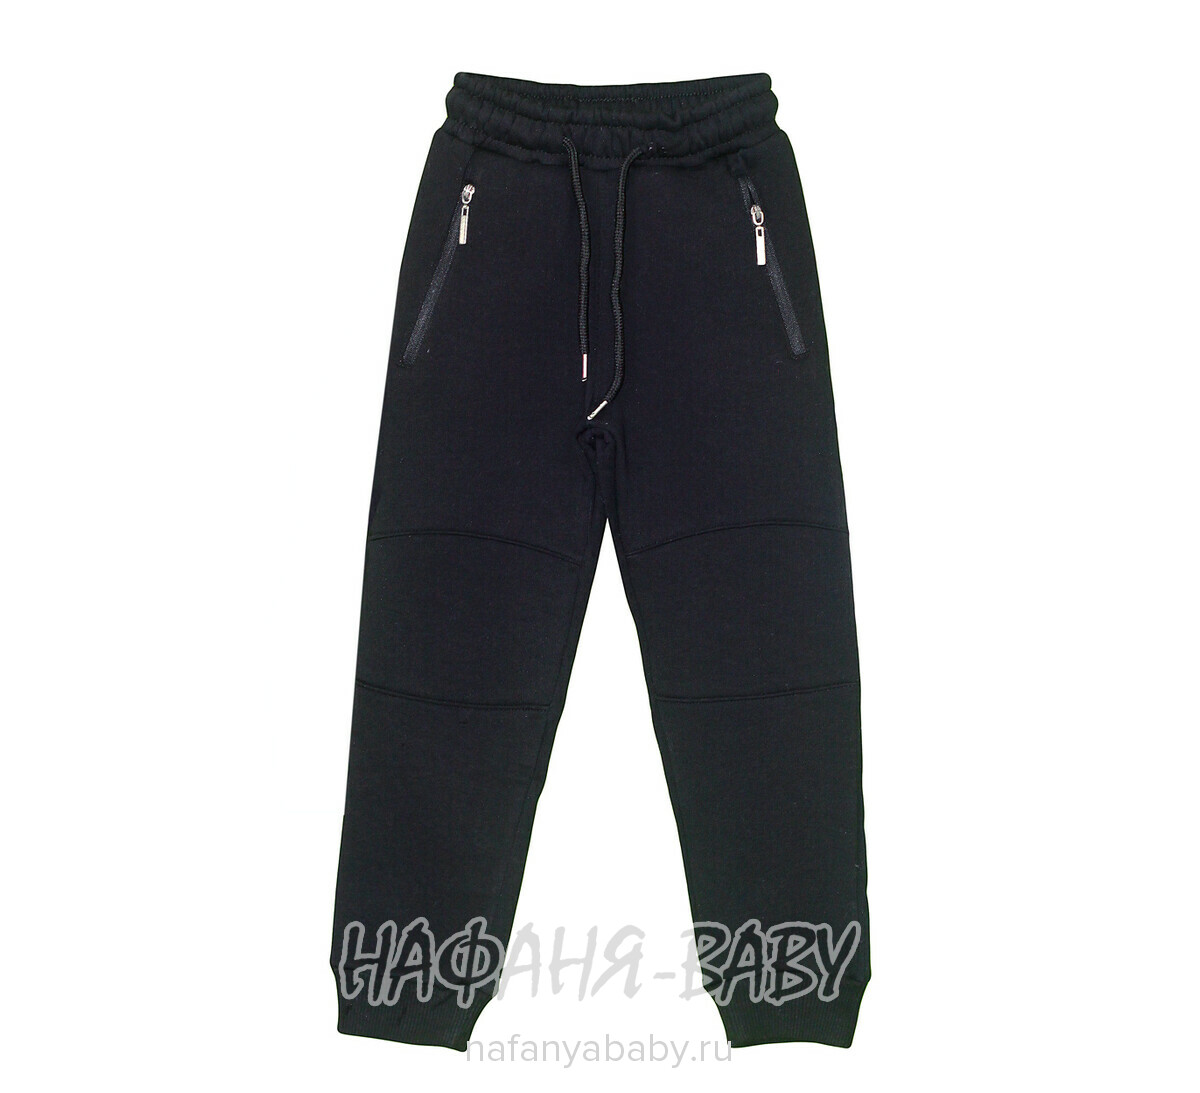 Теплые брюки с начесом MISIL, купить в интернет магазине Нафаня. арт: 0615 9-12.